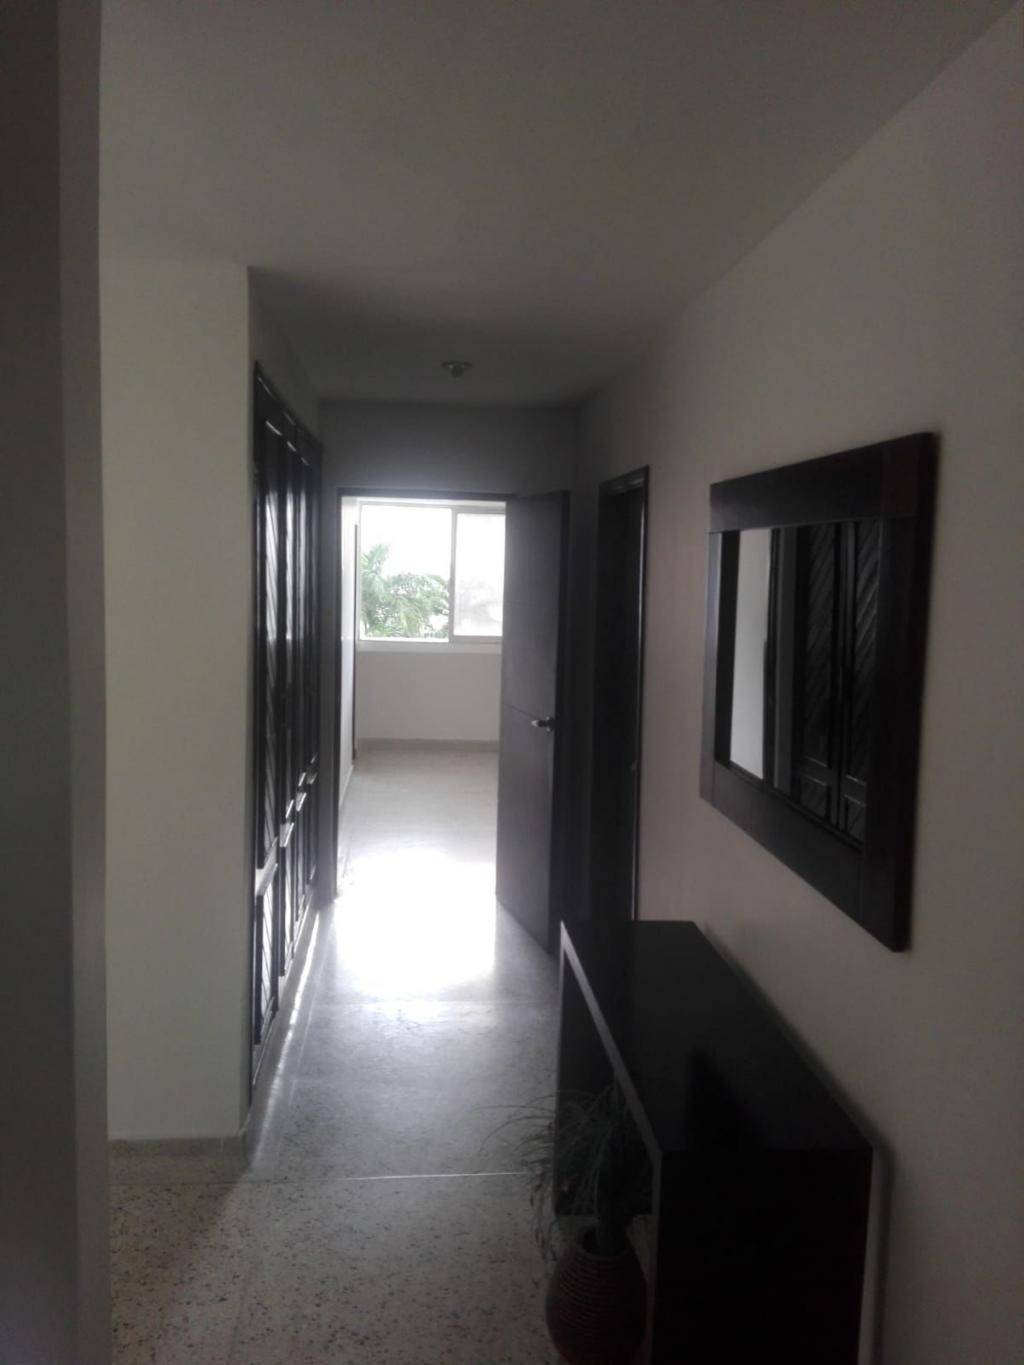 Apartamento en Venta por Financar S.A. ubicado en Barranquilla. El código del inmueble es: 7390057 Imágen 5